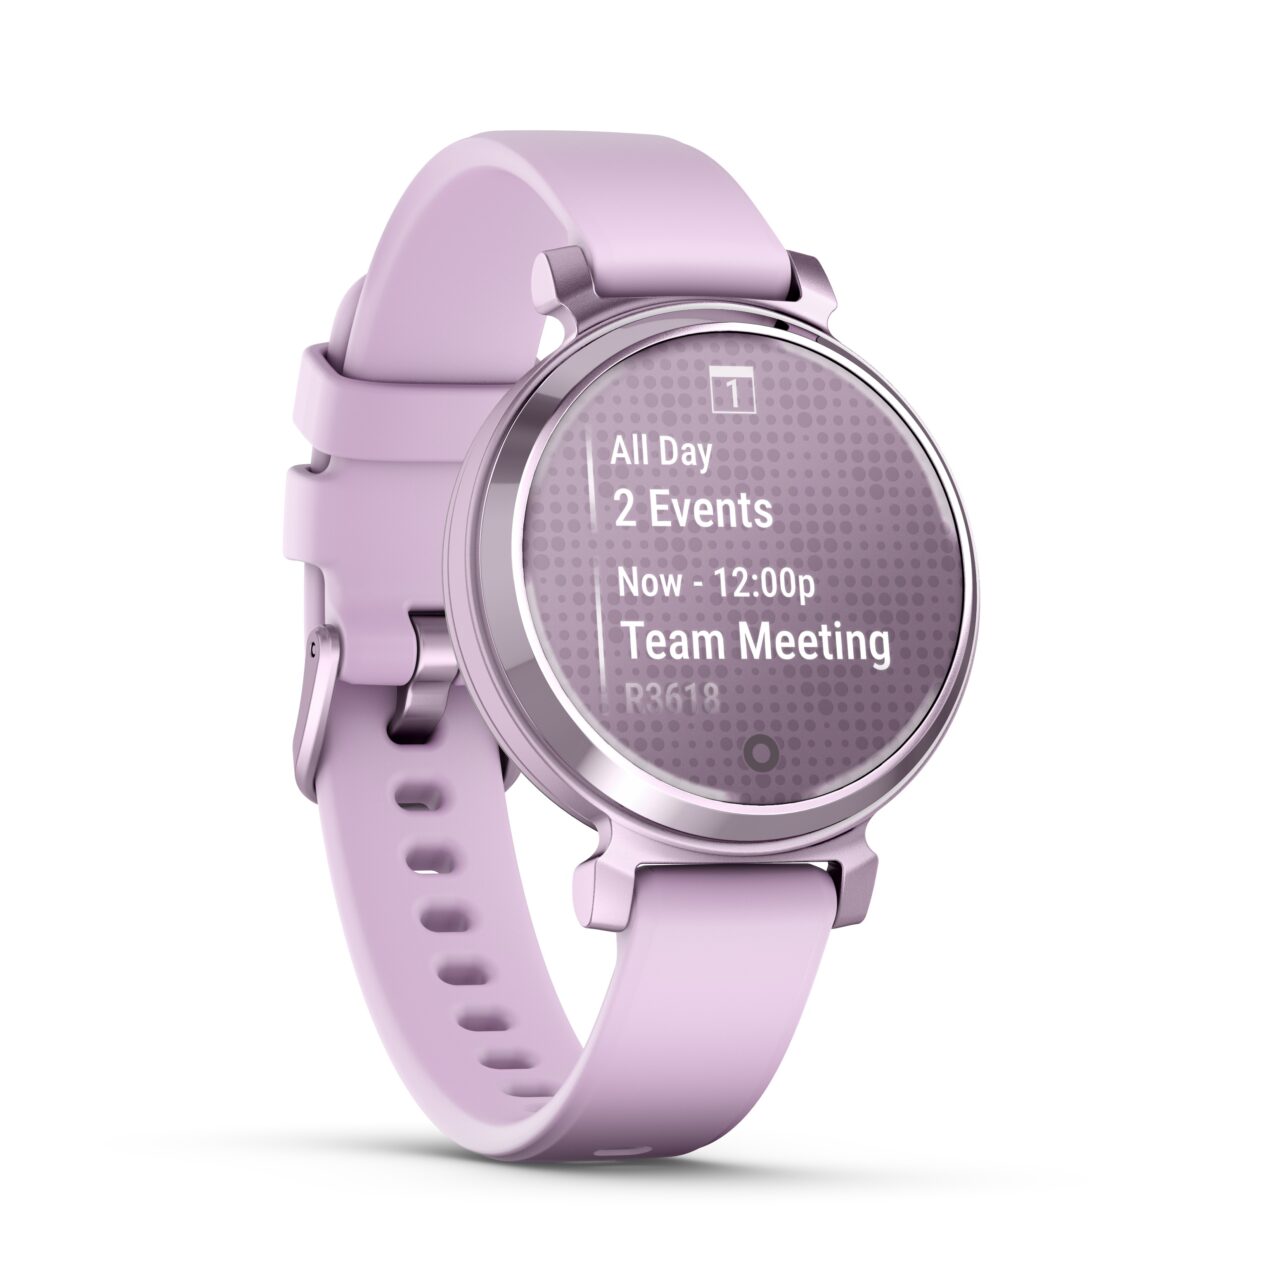 Fioletowy inteligentny zegarek z wyświetlaczem pokazującym dwa zdarzenia, w tym spotkanie zespołowe o godzinie 12:00.